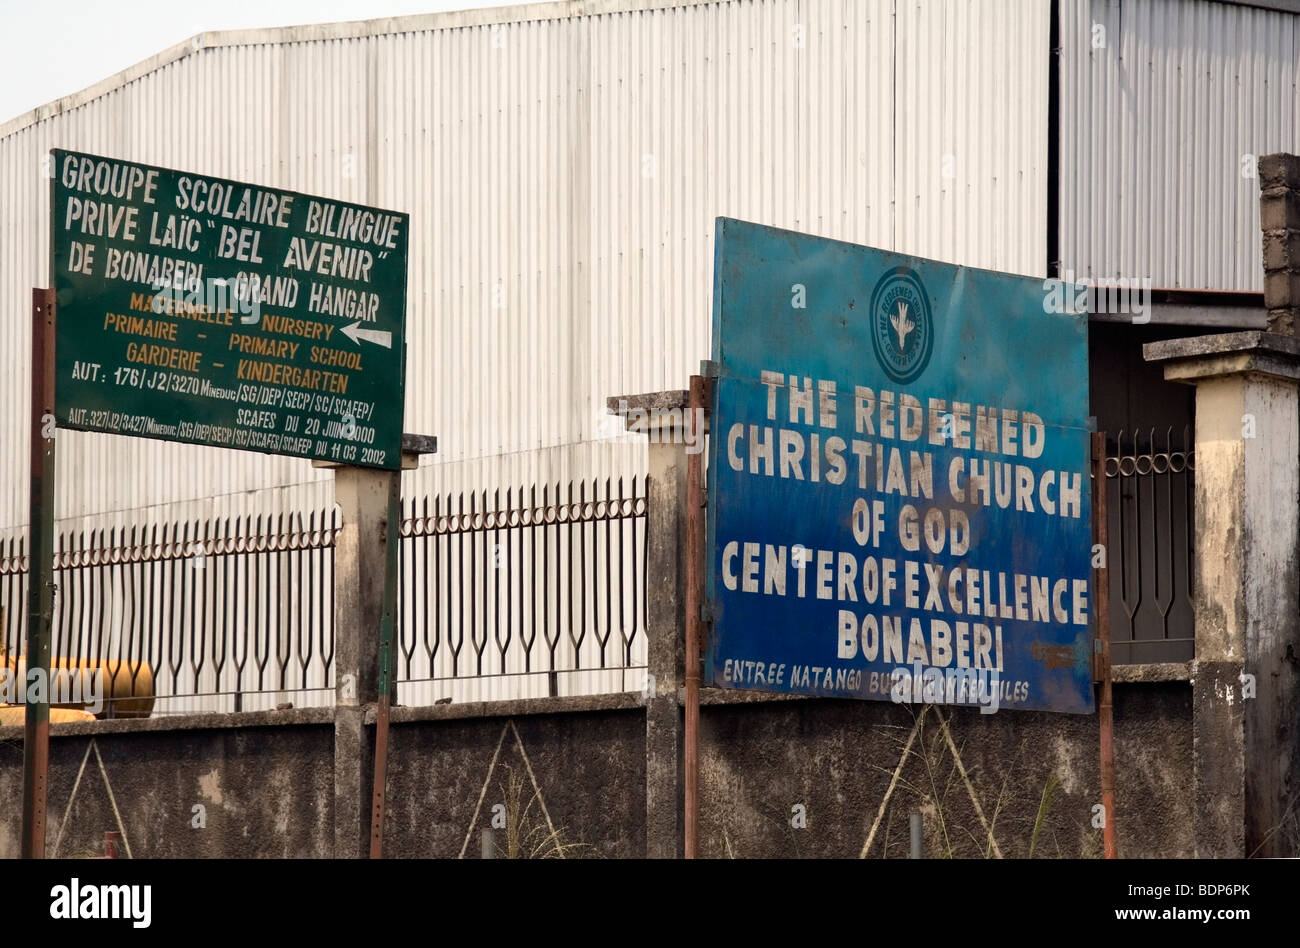 Indications pour l'école privée et l'Église chrétienne de Dieu racheté Centre d'excellence du district de Bonaberi Douala Cameroun Afrique de l'Ouest Banque D'Images